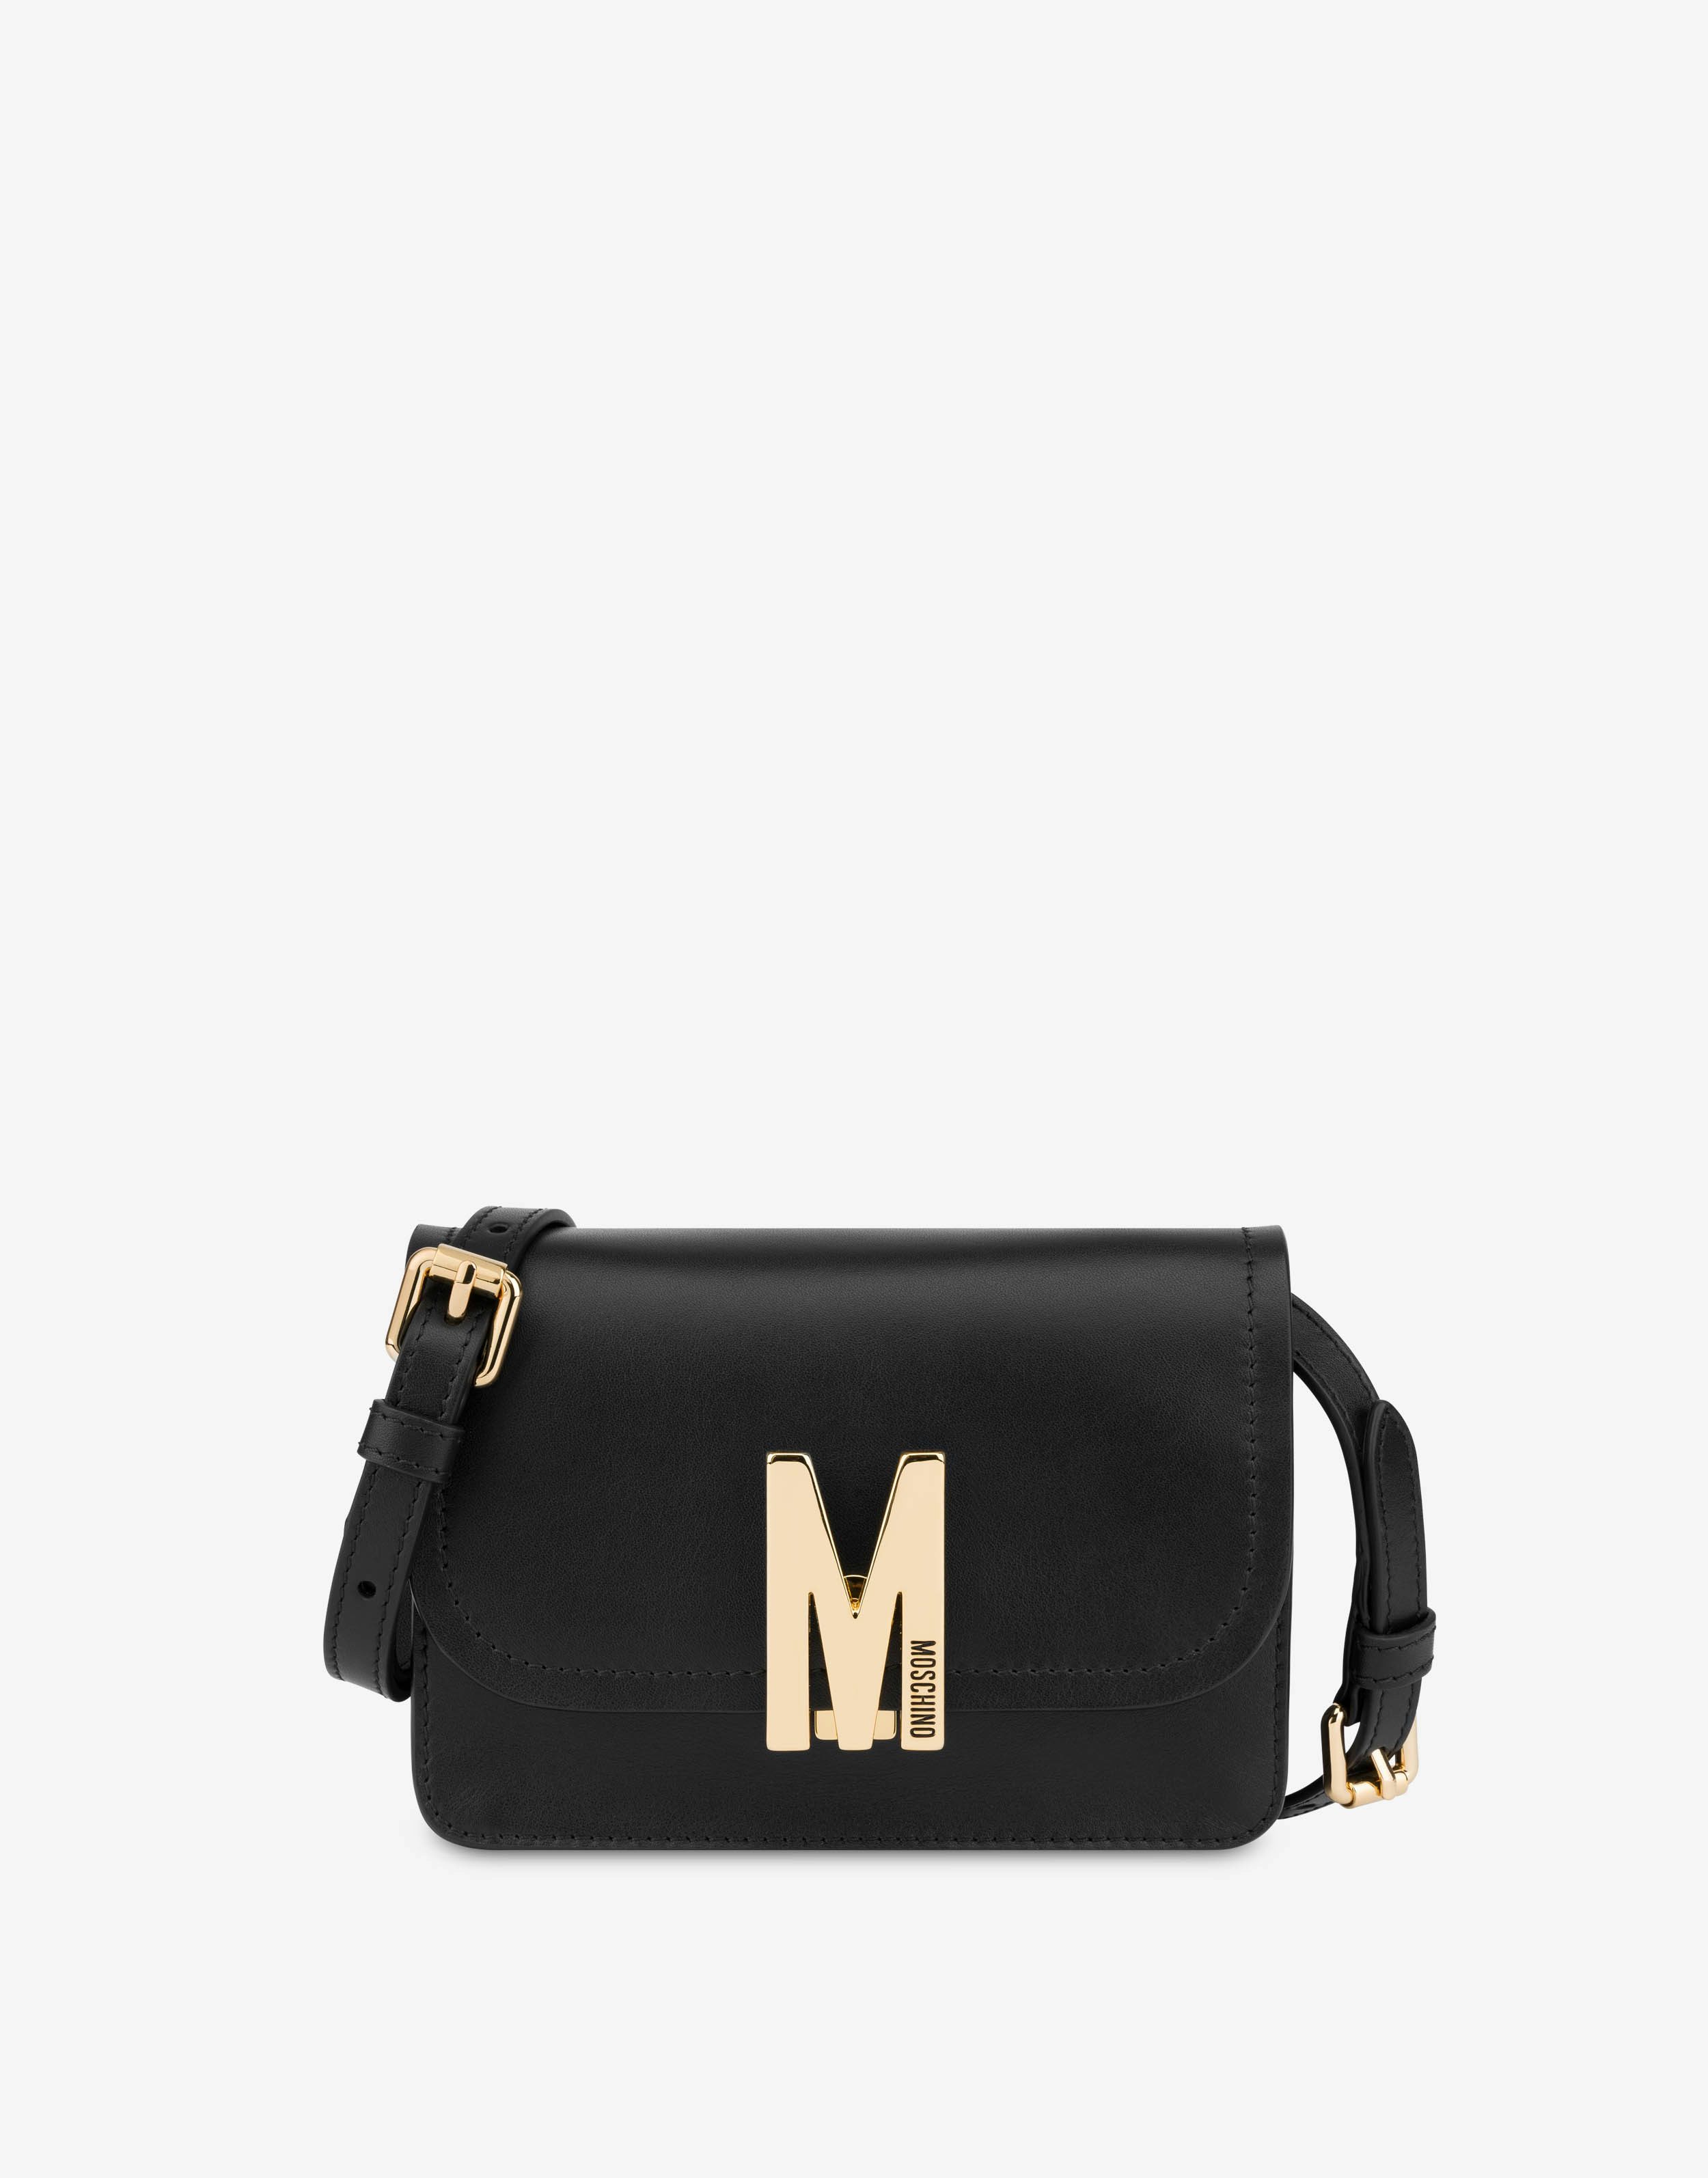 Small calfskin M Bag